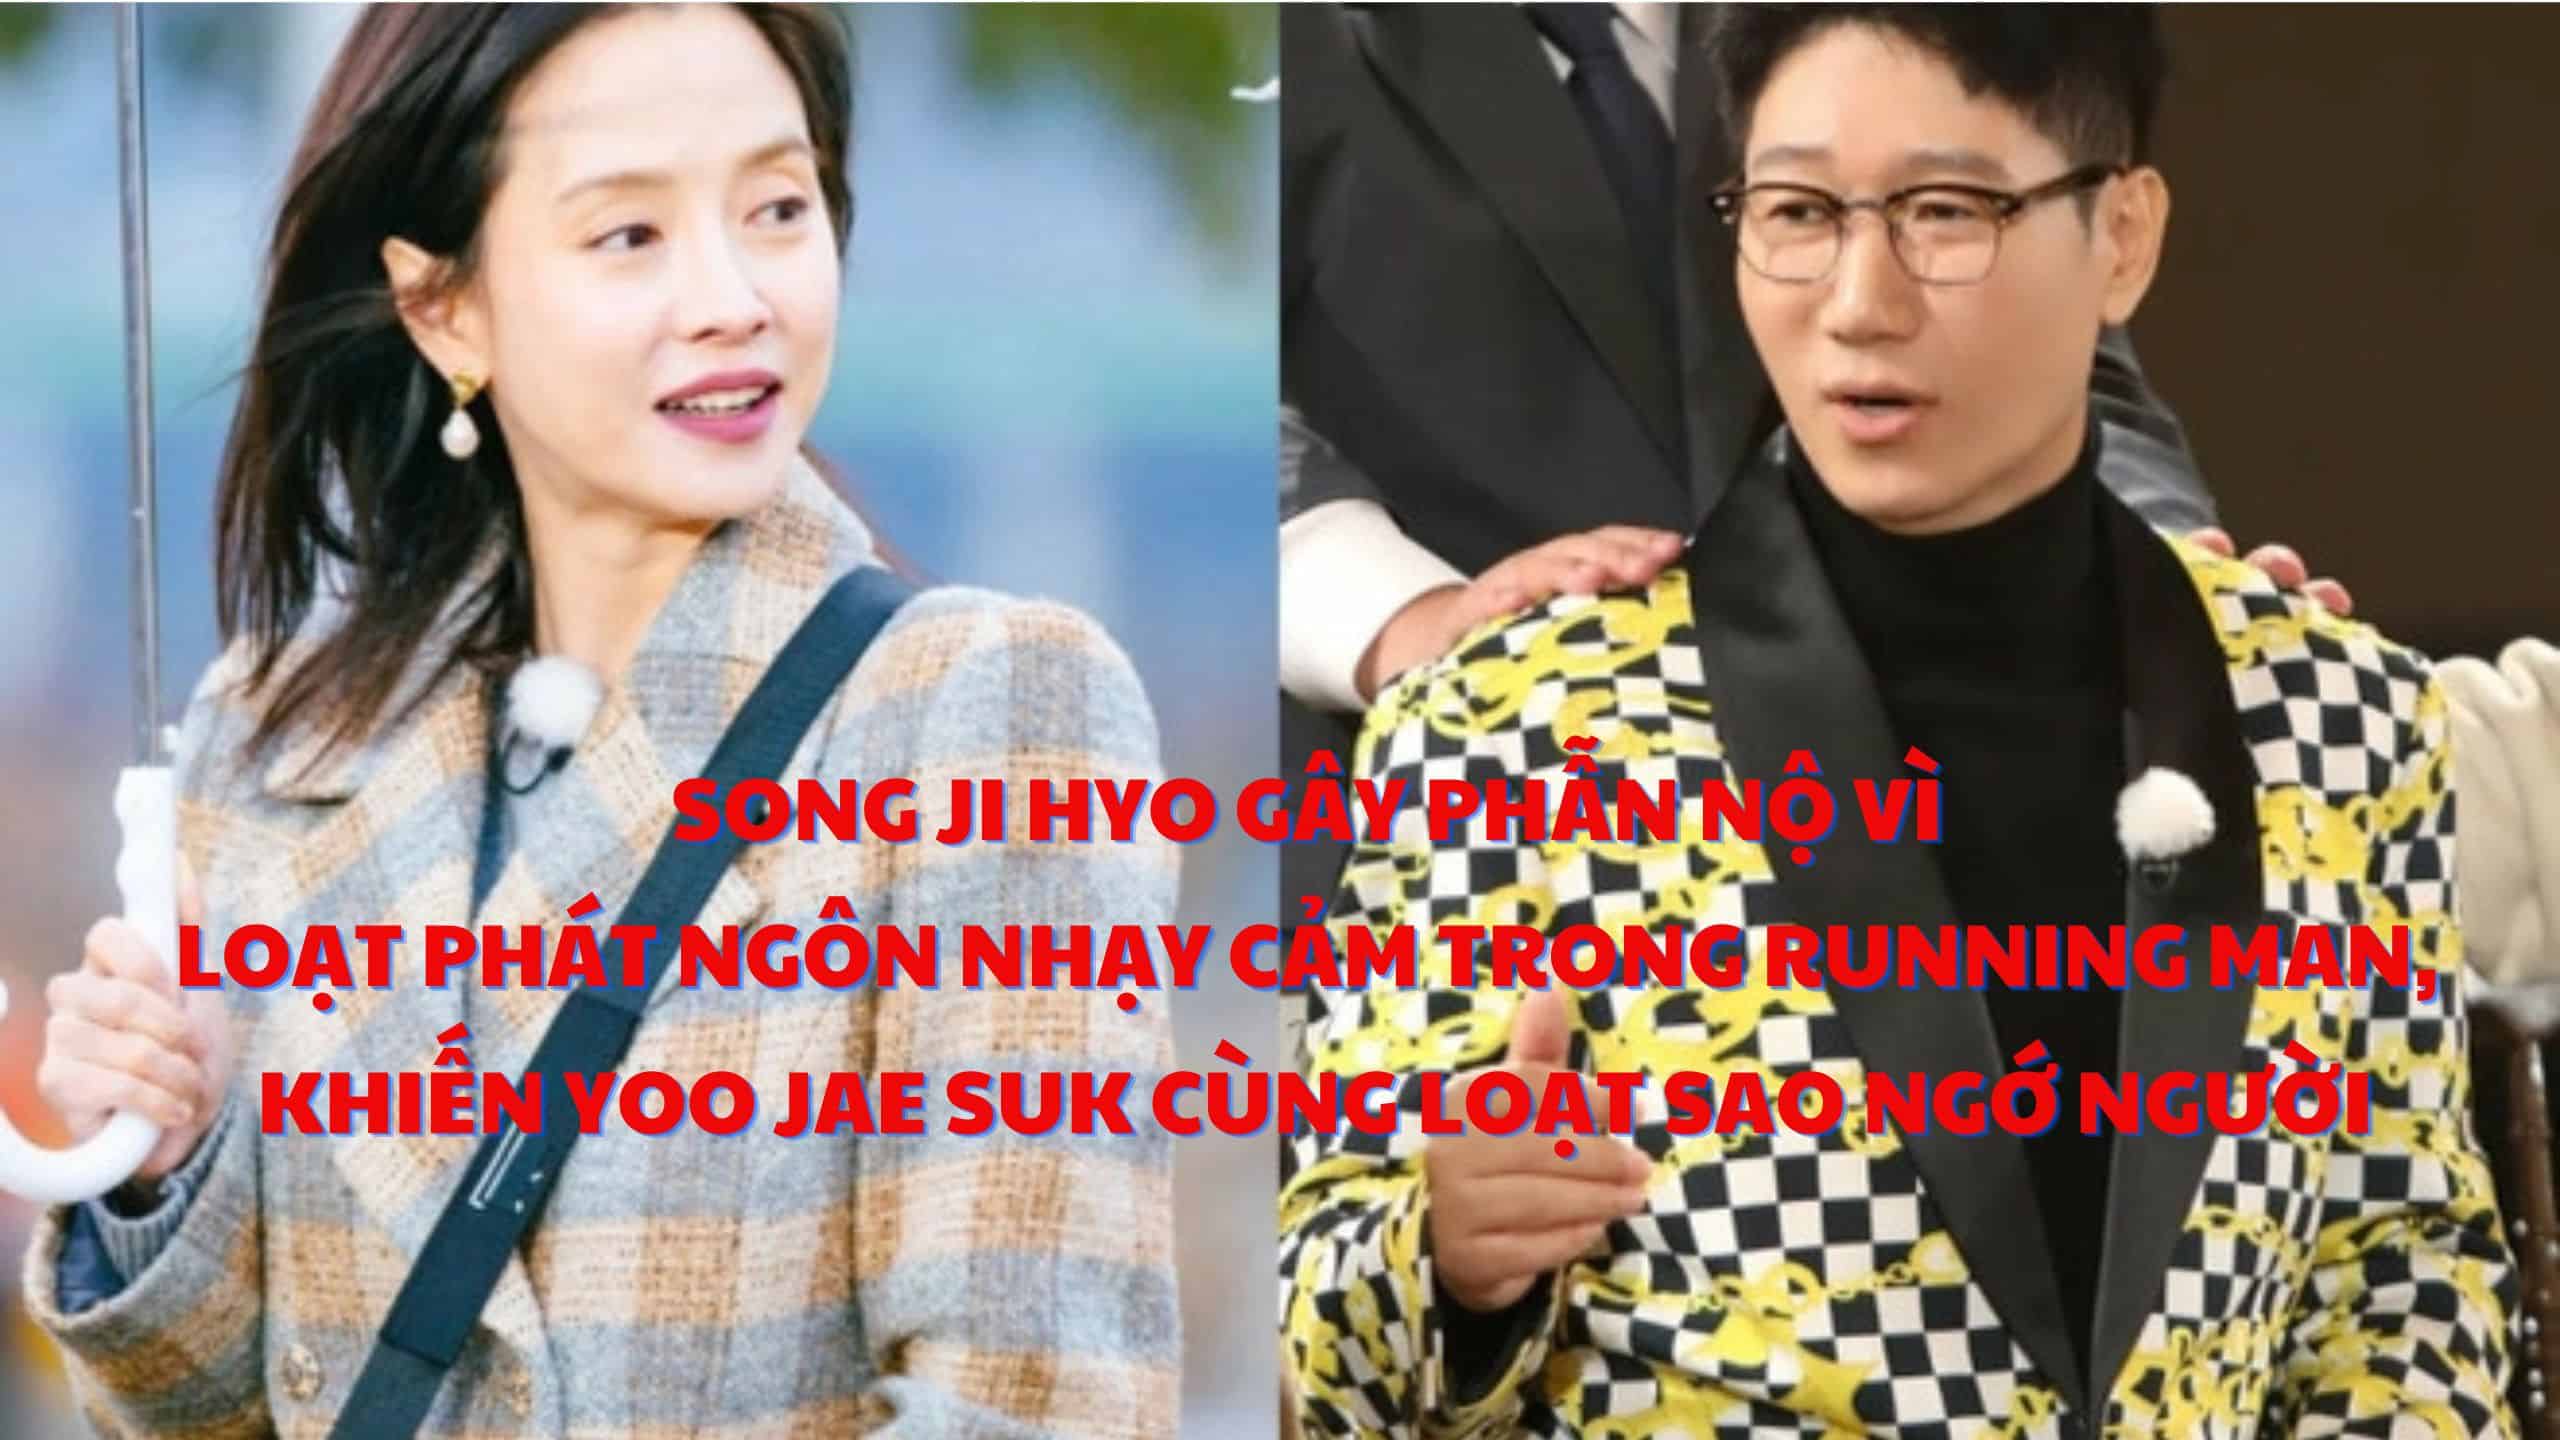 Song Ji Hyo gây phẫn nộ vì loạt phát ngôn nhạy cảm trong Running Man, khiến Yoo Jae Suk cùng loạt sao ngớ người